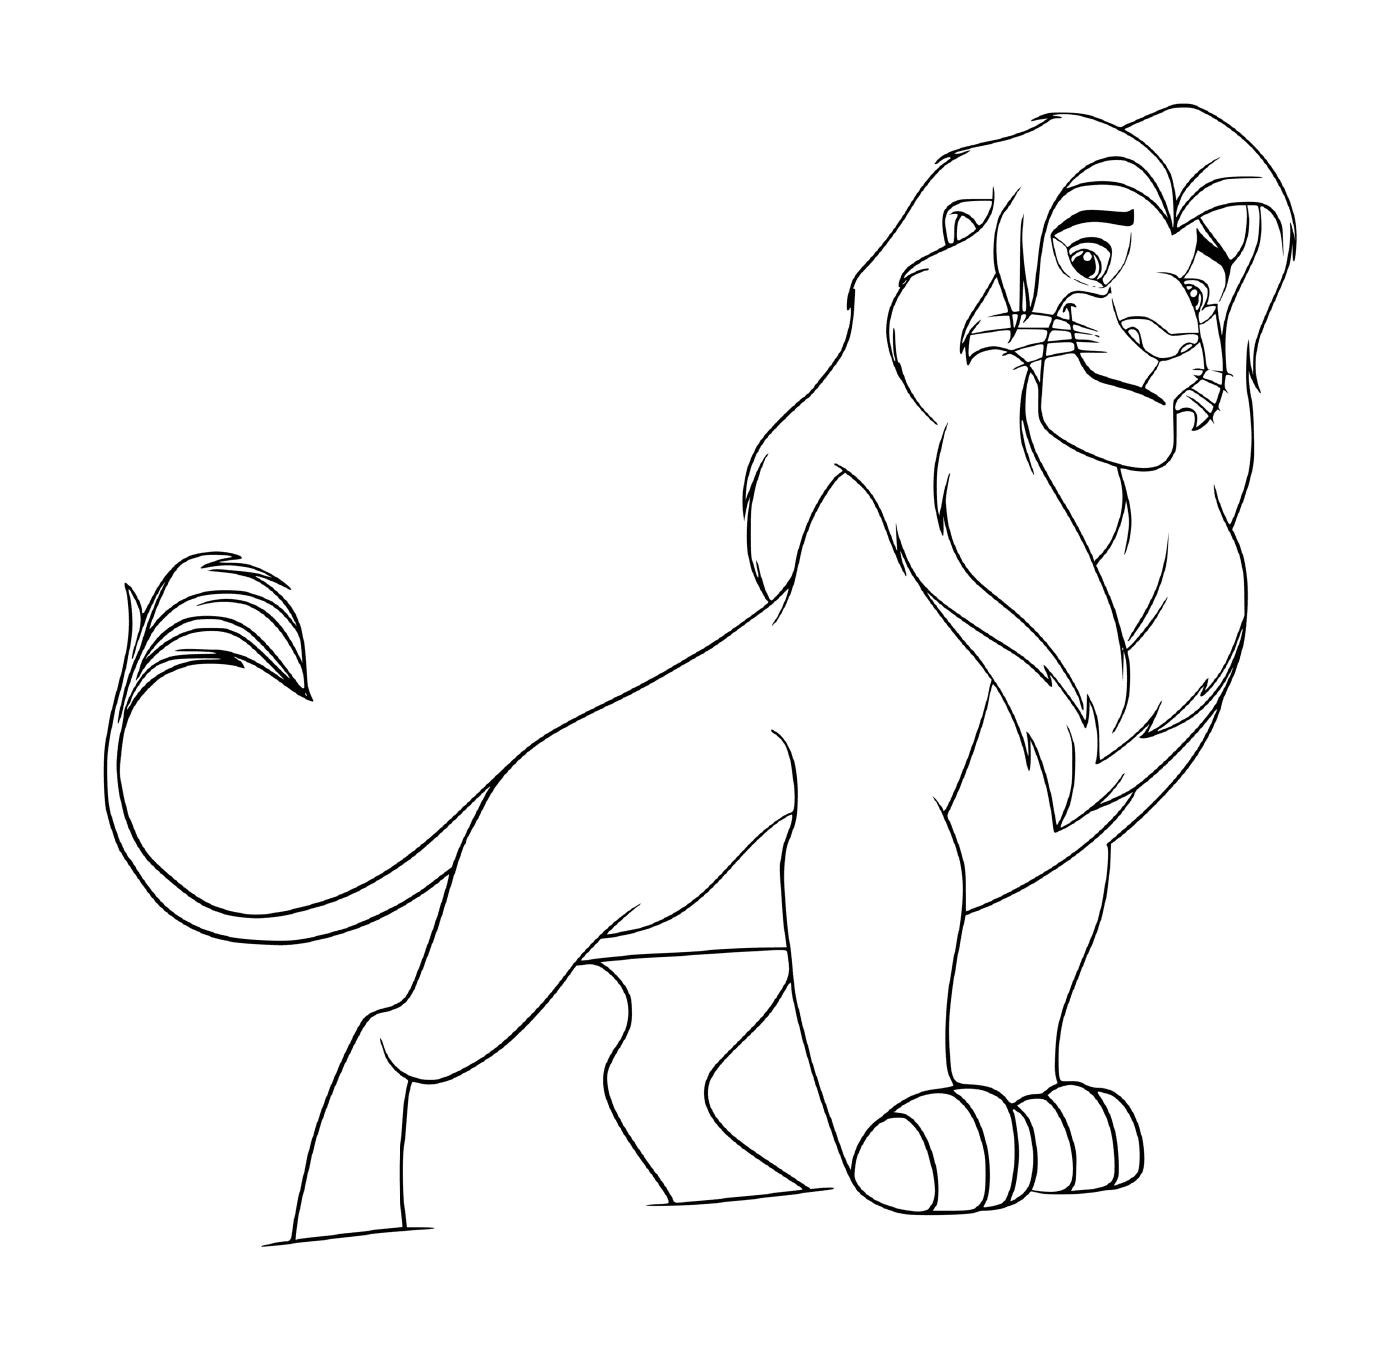  Симба, великий король льва 